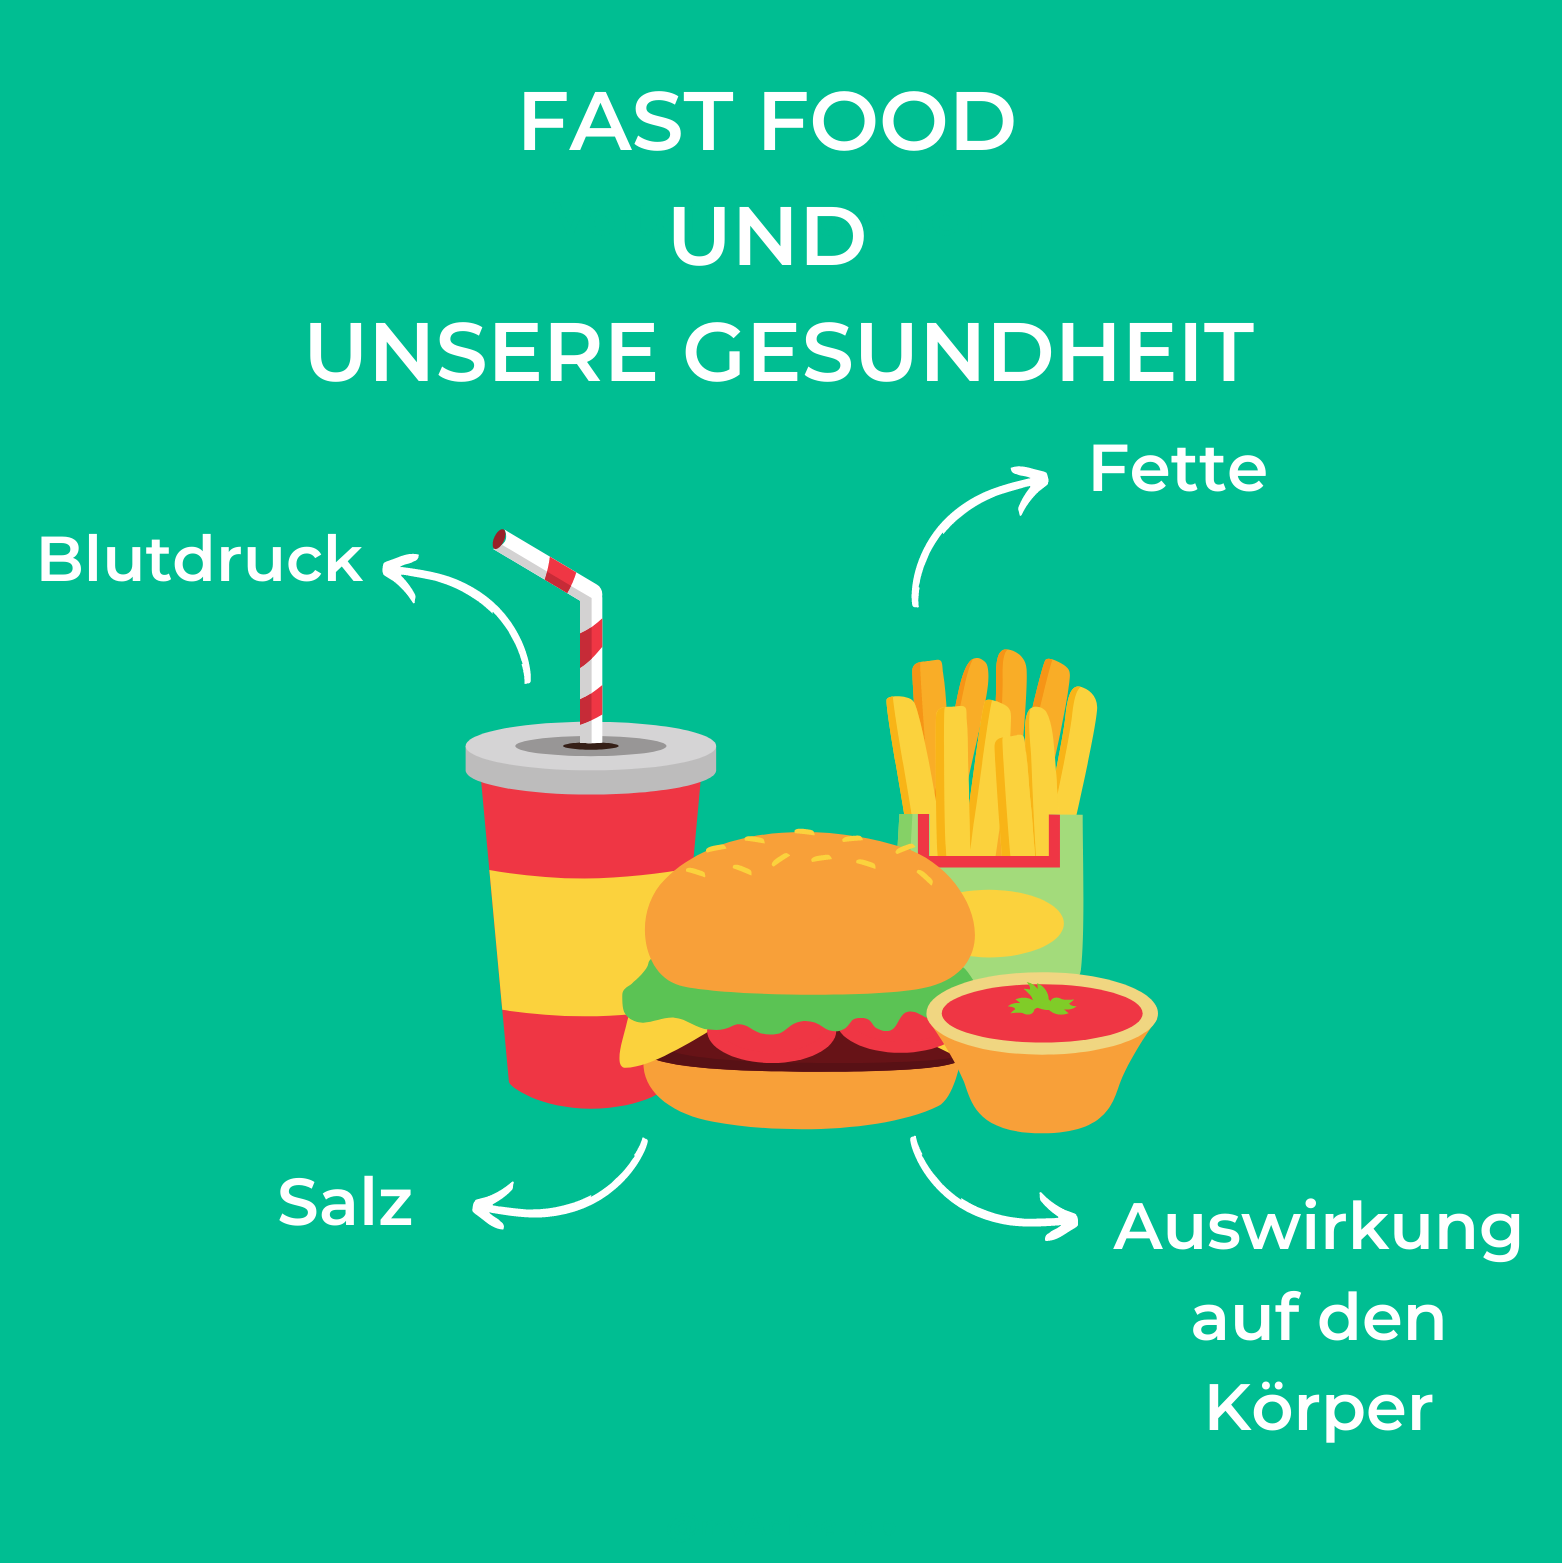 Fast Food und unsere Gesundheit